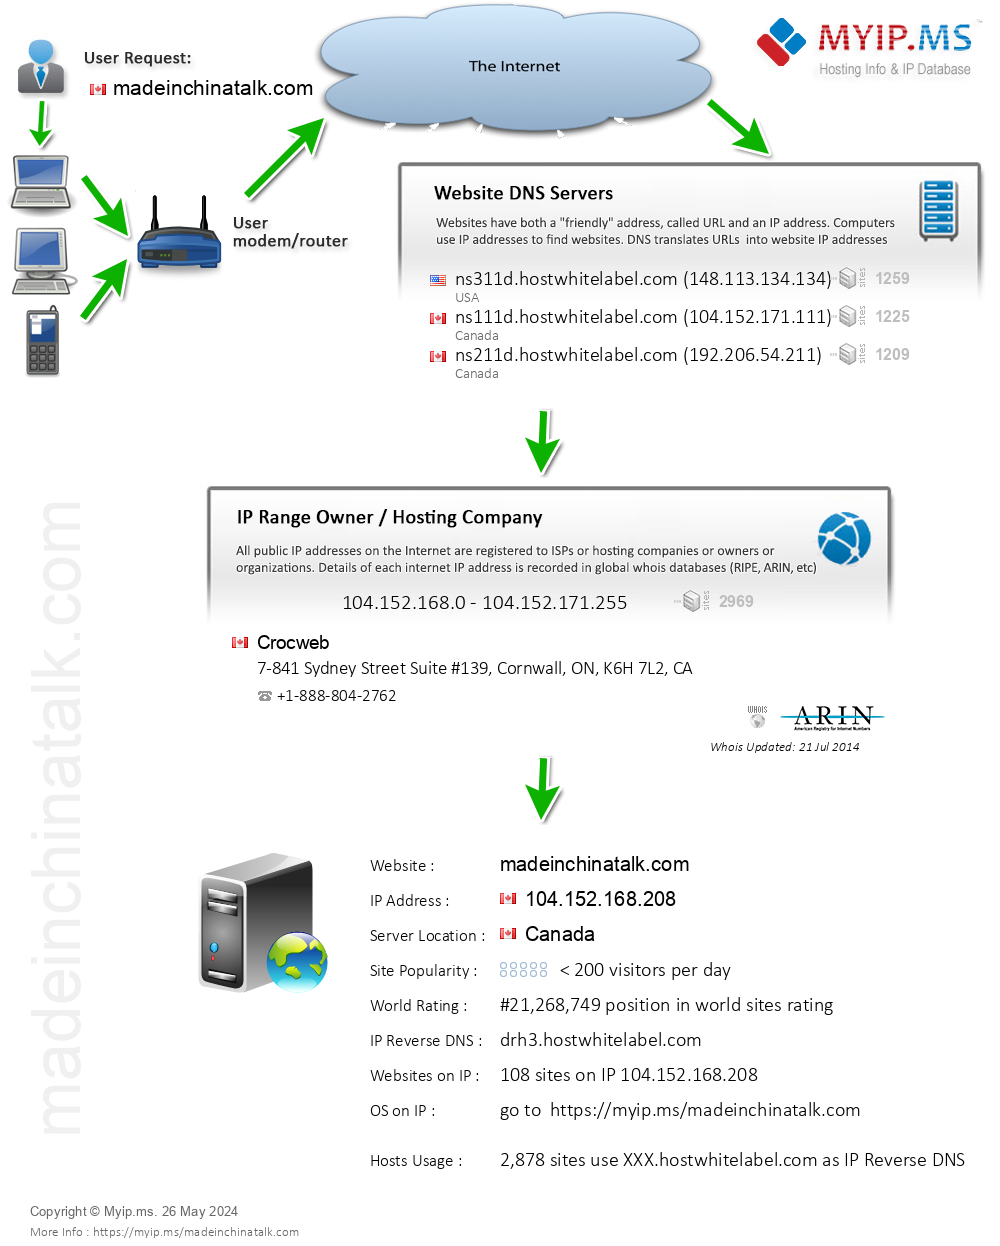 Madeinchinatalk.com - Website Hosting Visual IP Diagram